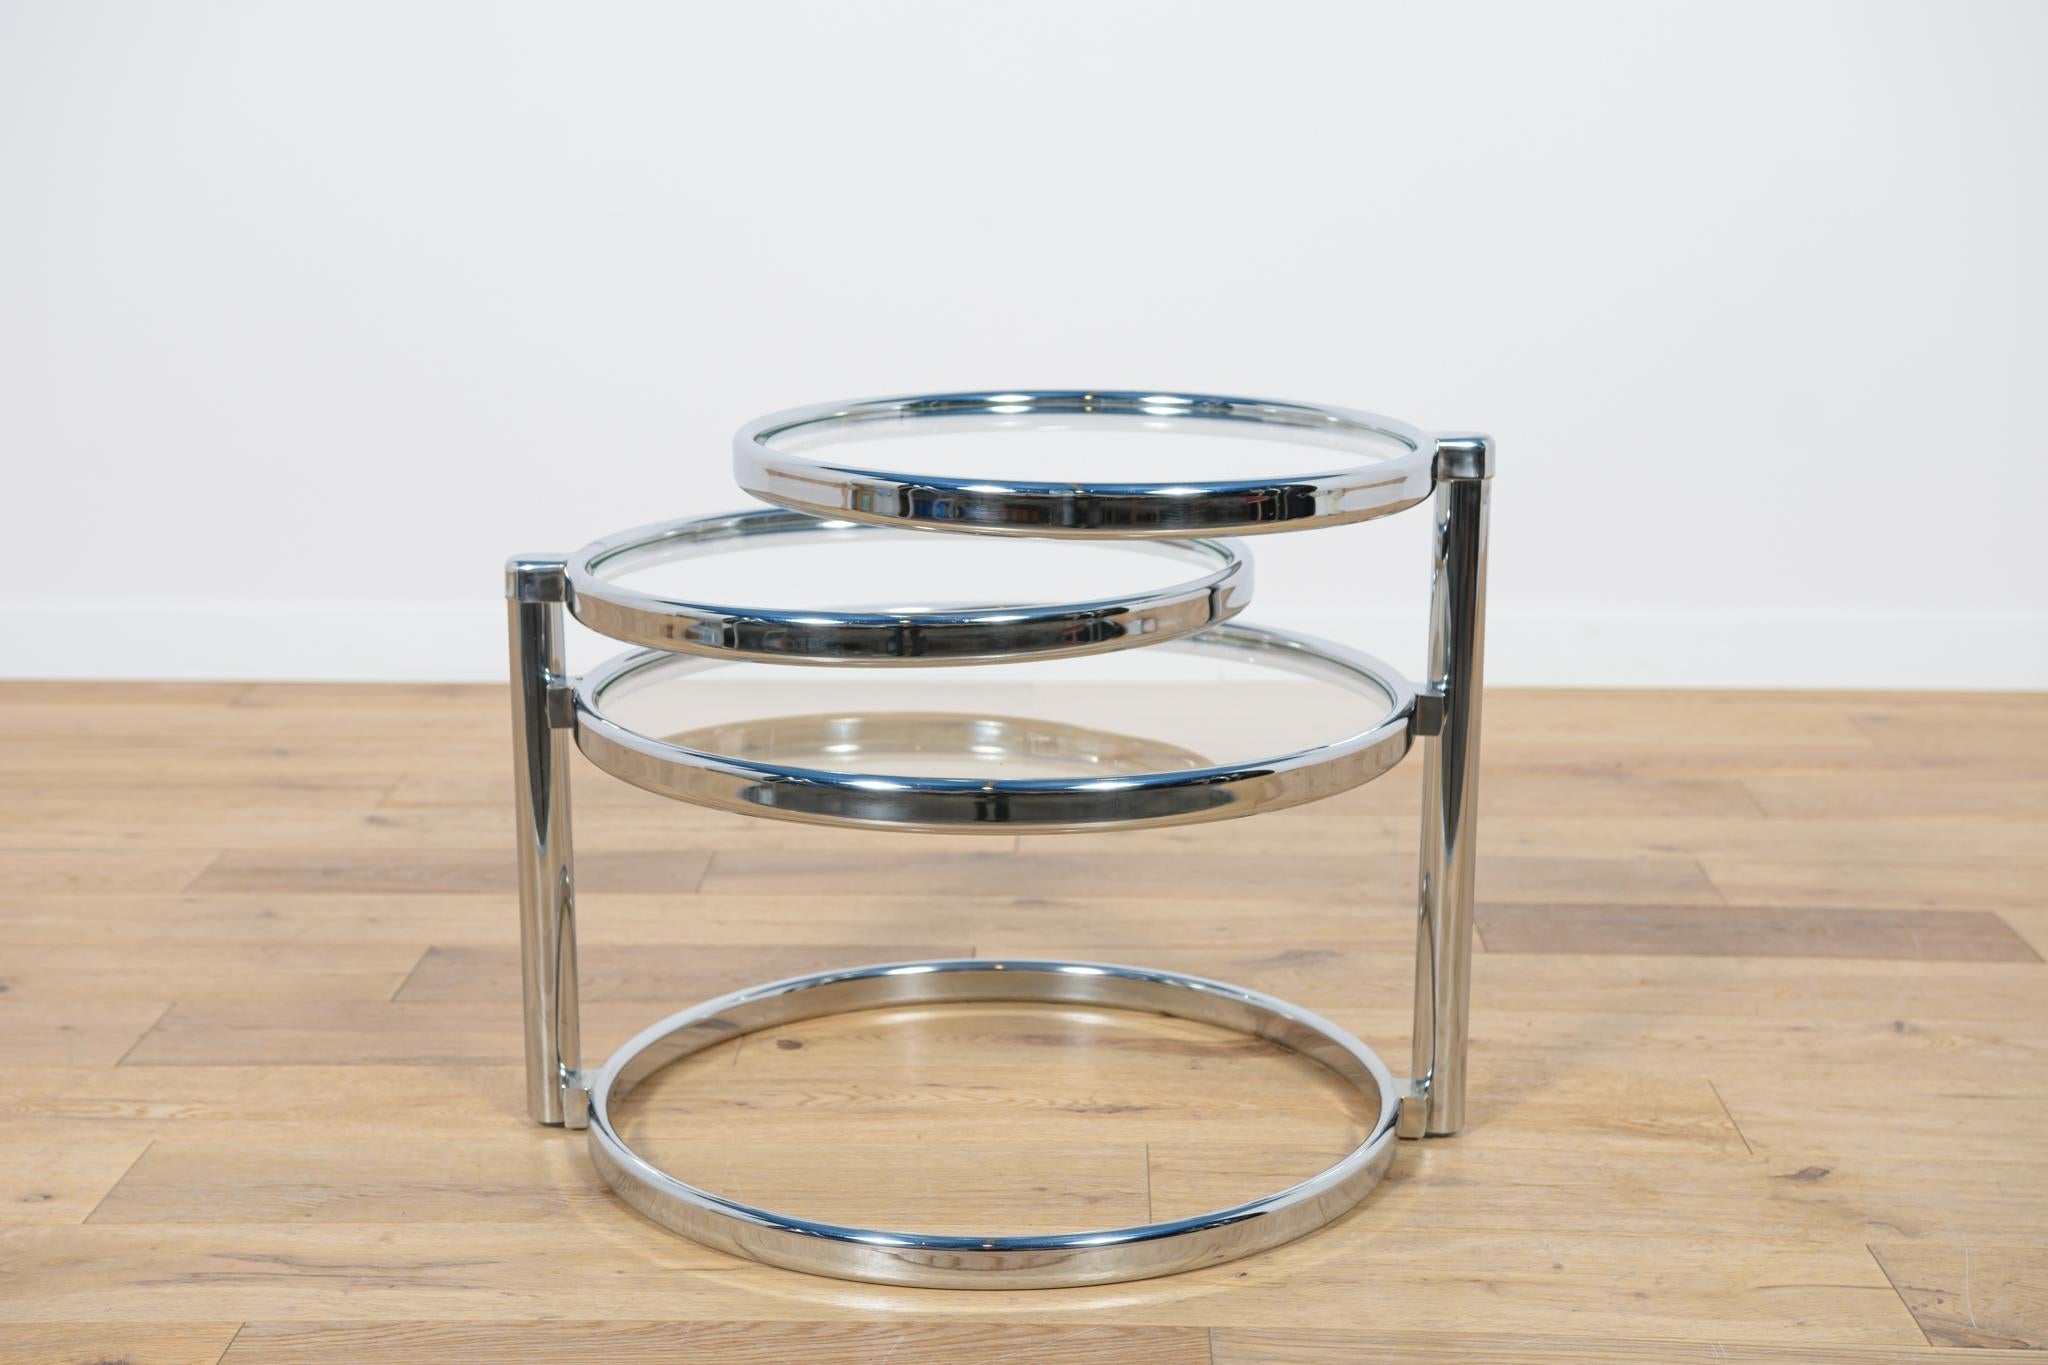 Une table conçue par Milo Baughman aux États-Unis dans les années 1970. Un design unique en métal chromé. Un cadre composé de trois plateaux qui peuvent être prolongés à partir du corps central à l'aide de deux articulations latérales. Les éléments